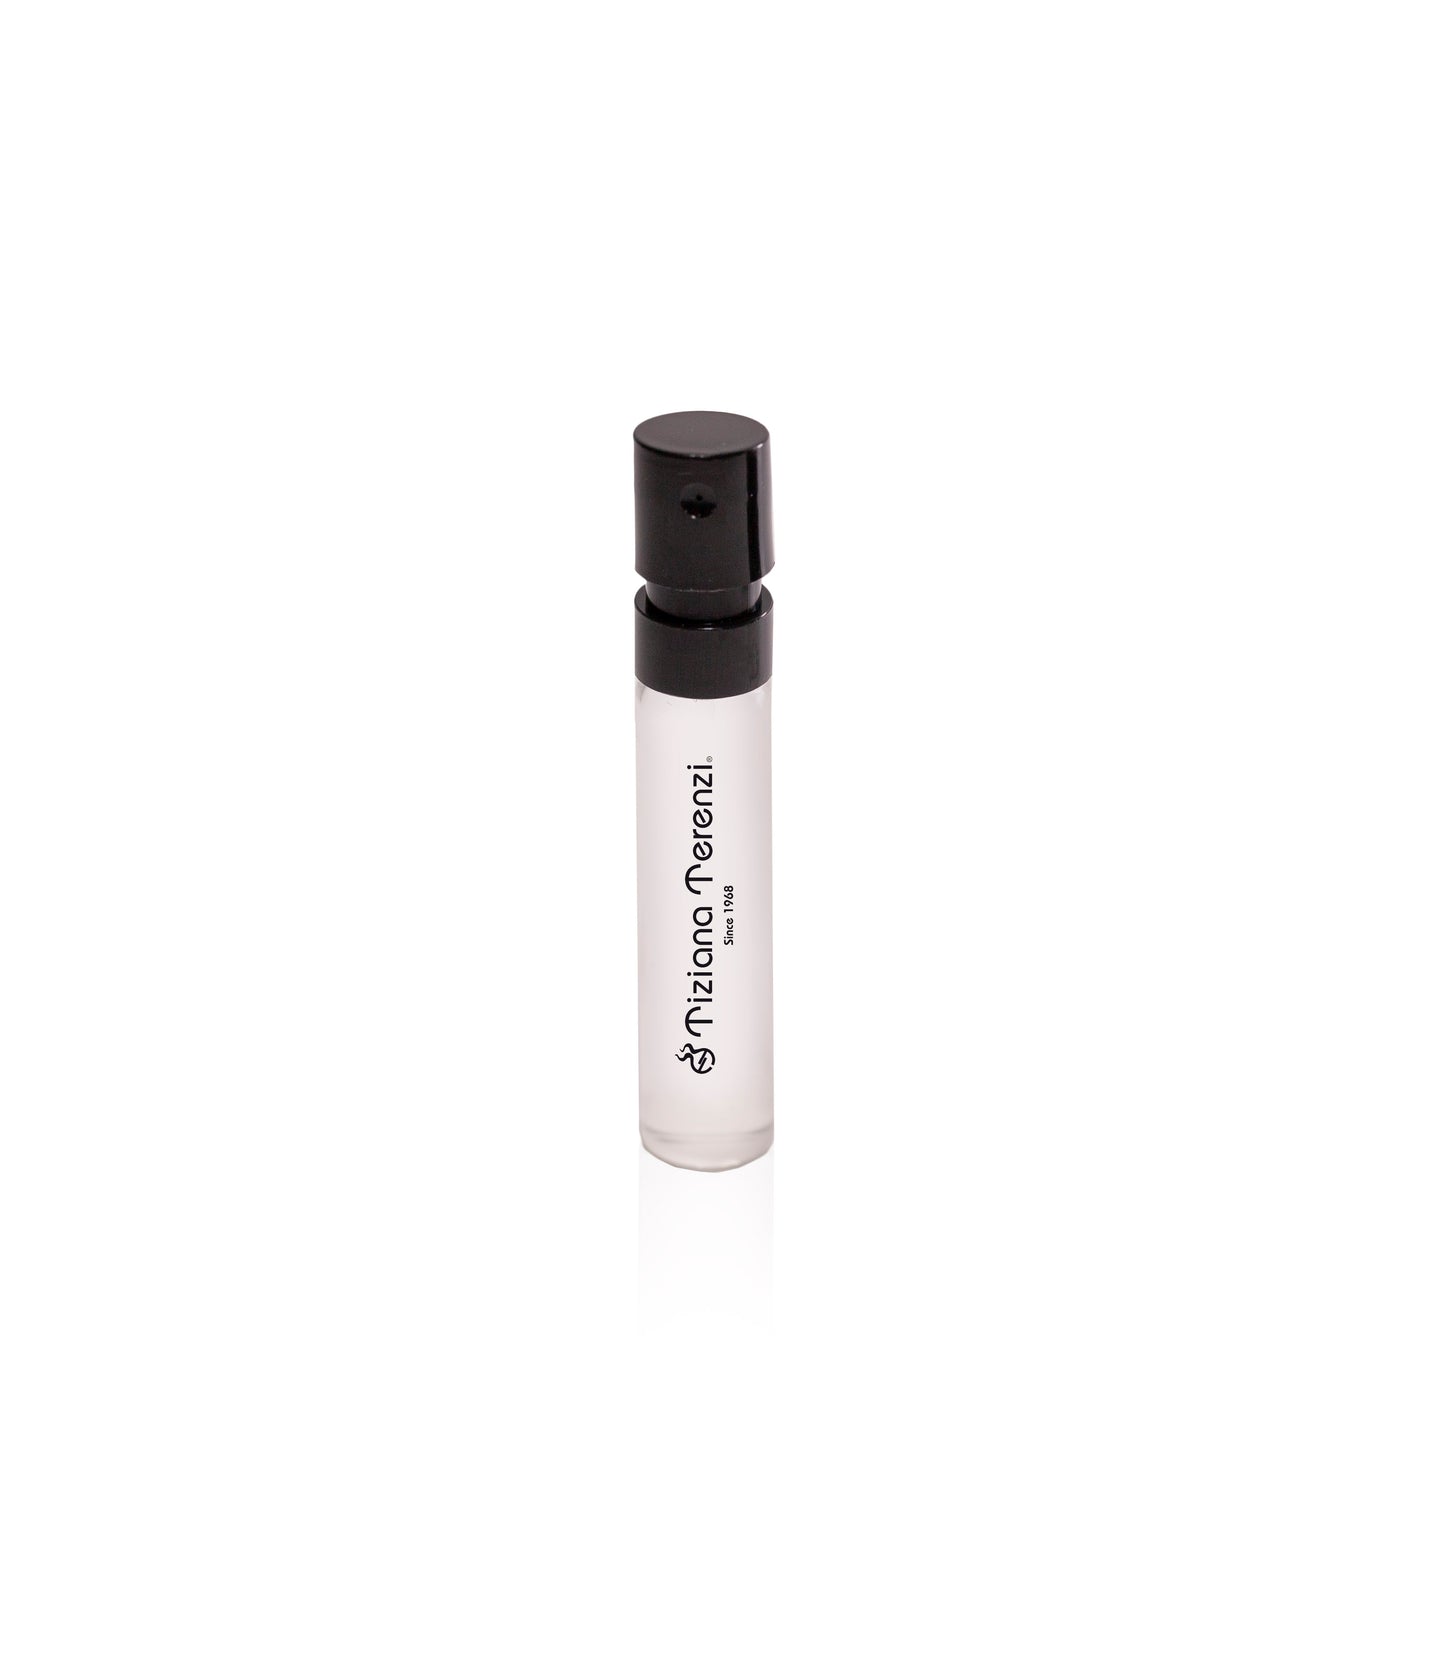 Luna Nero Oudh 1.5ml Sample Vial - Extrait de Parfum